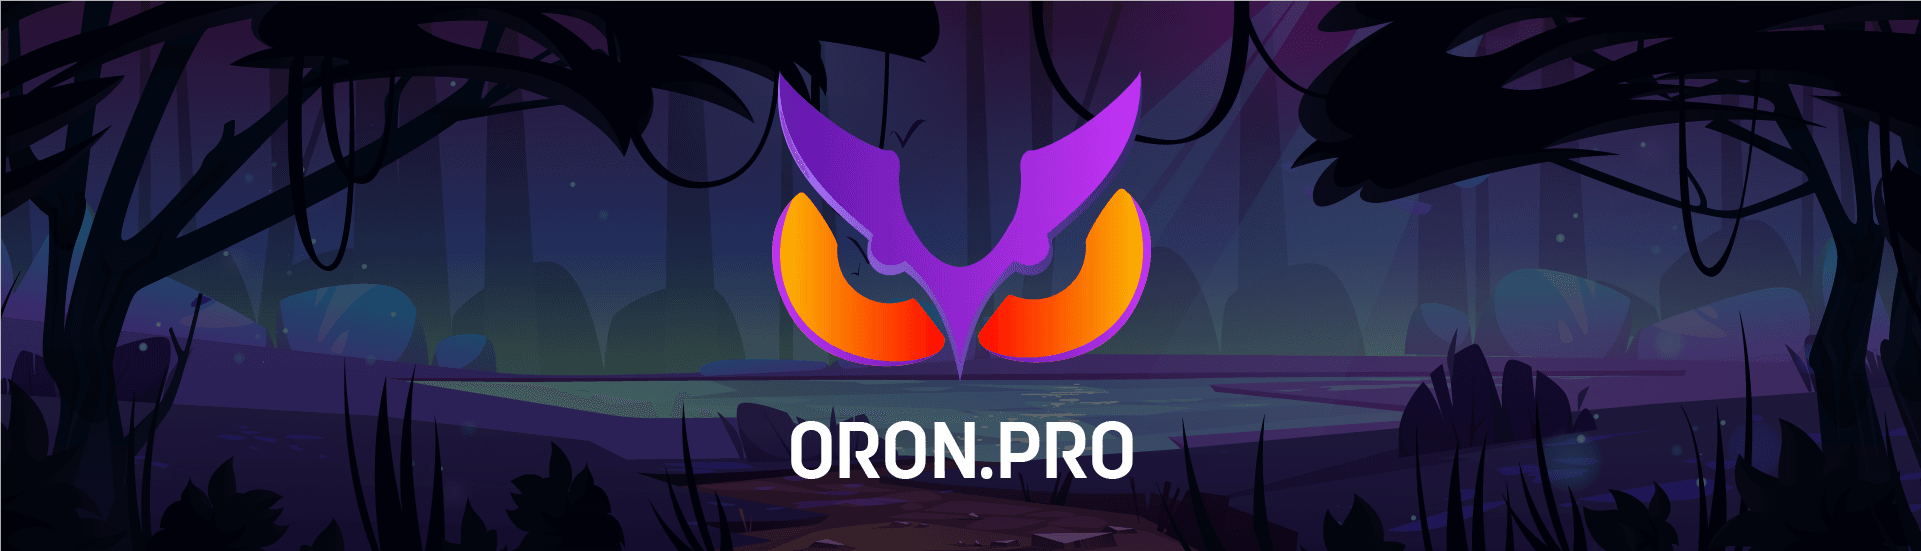 Oron_pro bannière